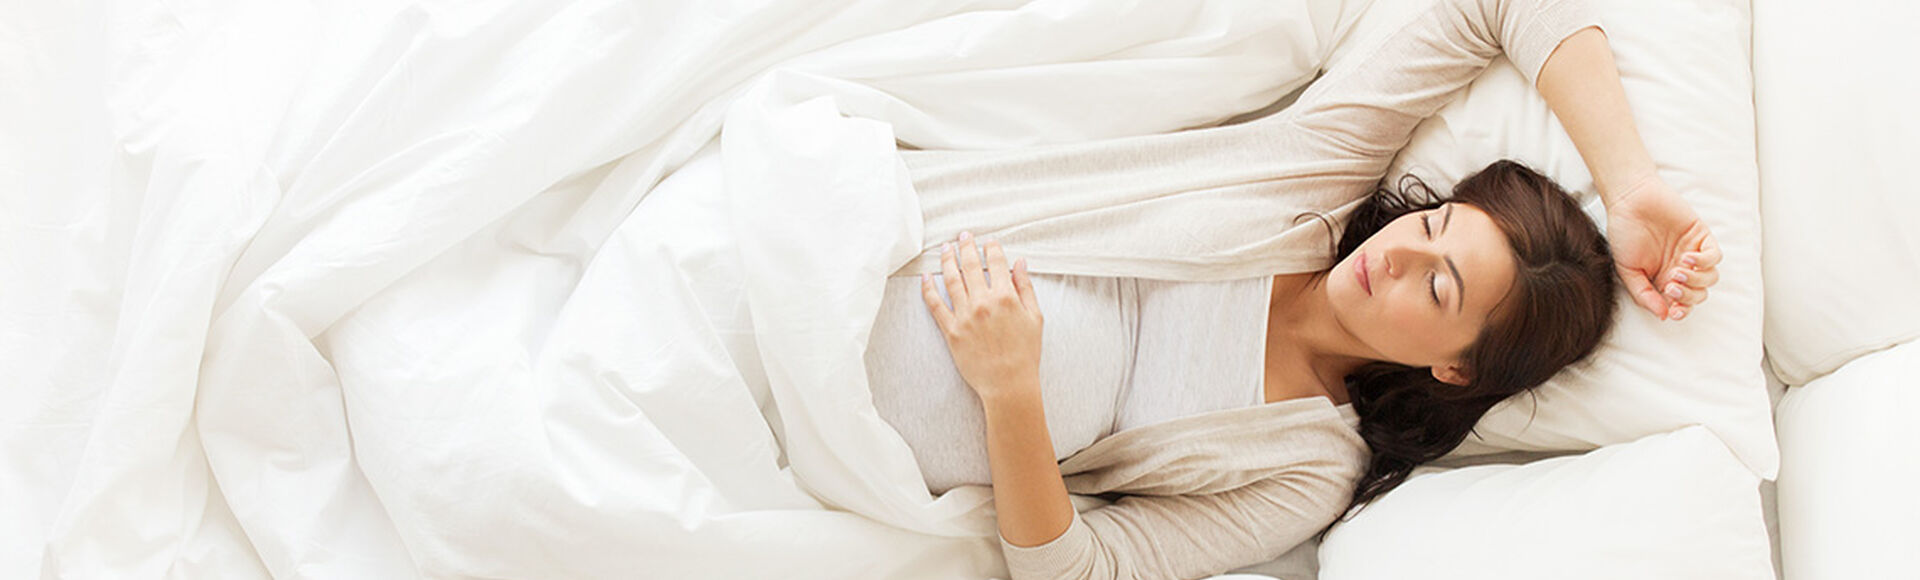 39 semanas de embarazo sin síntomas de parto